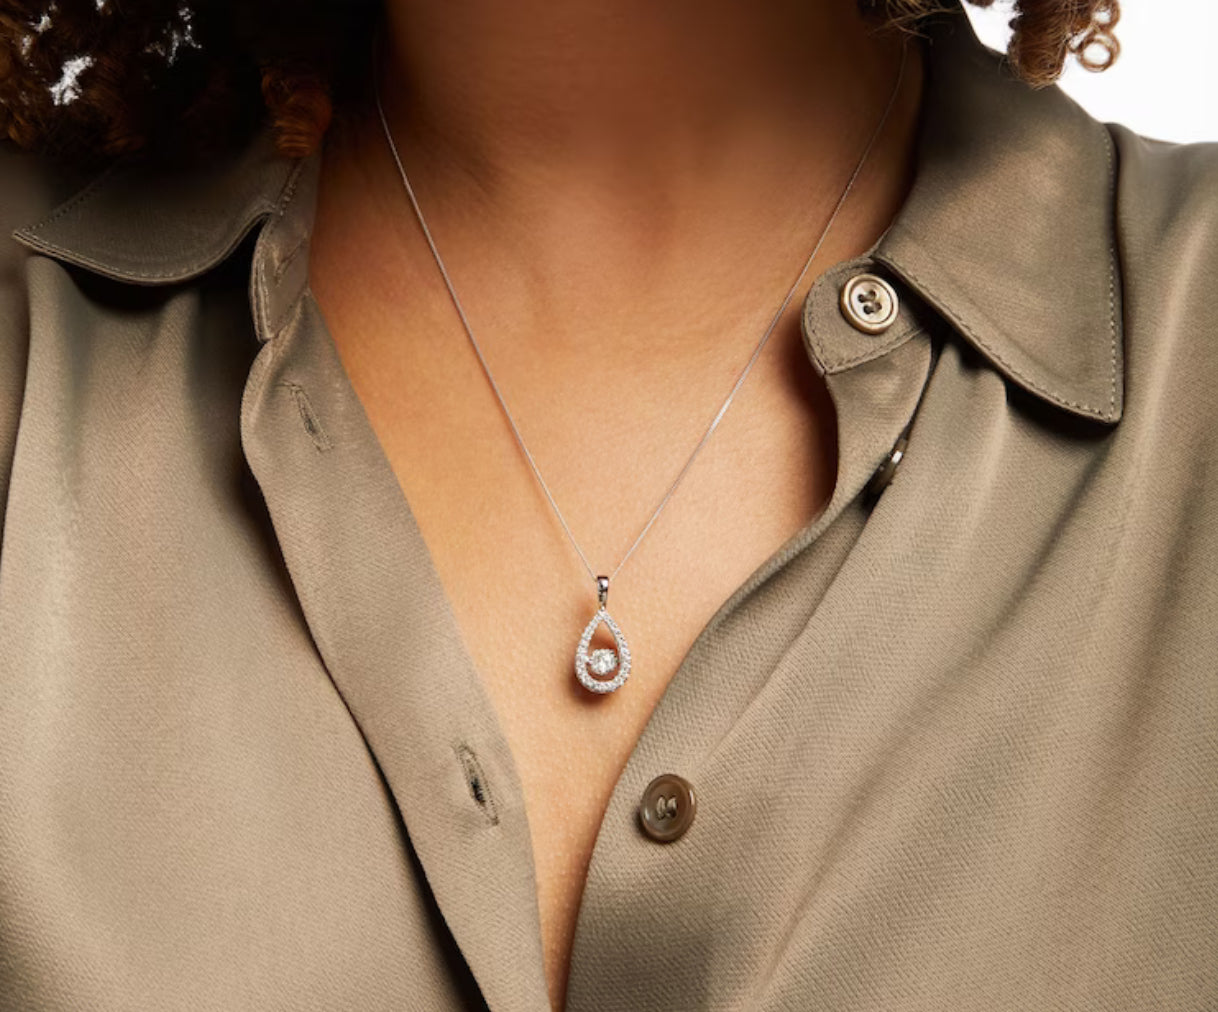 Love Diamond Pear Necklace